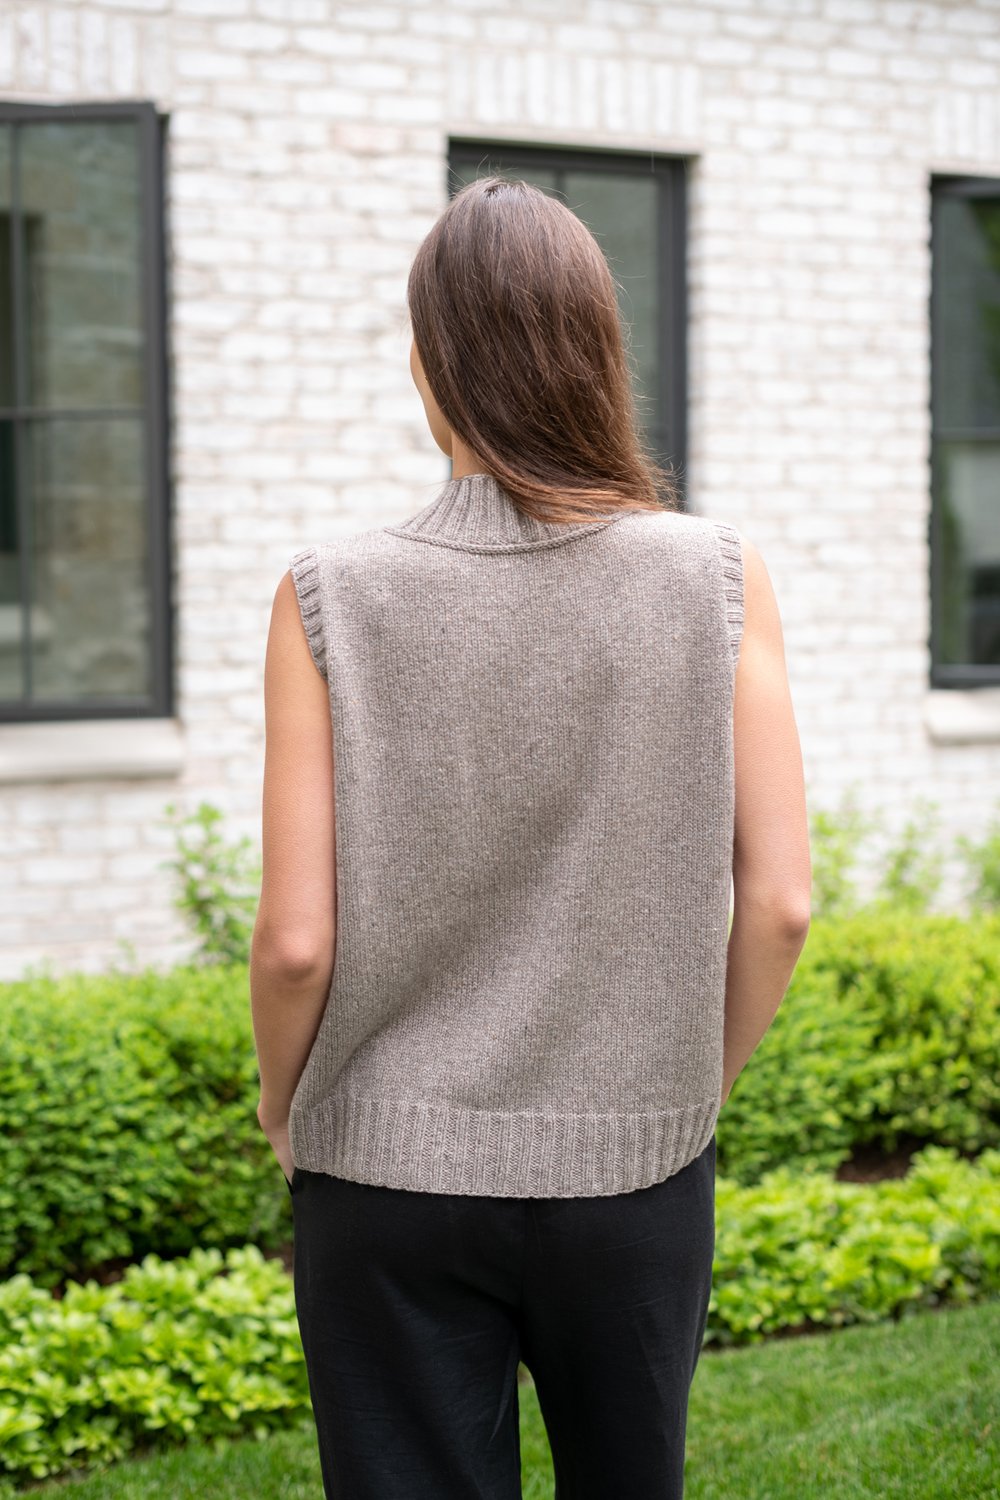 Melrose Vest by Julie project knitting Hoover kit — Julie Hoover